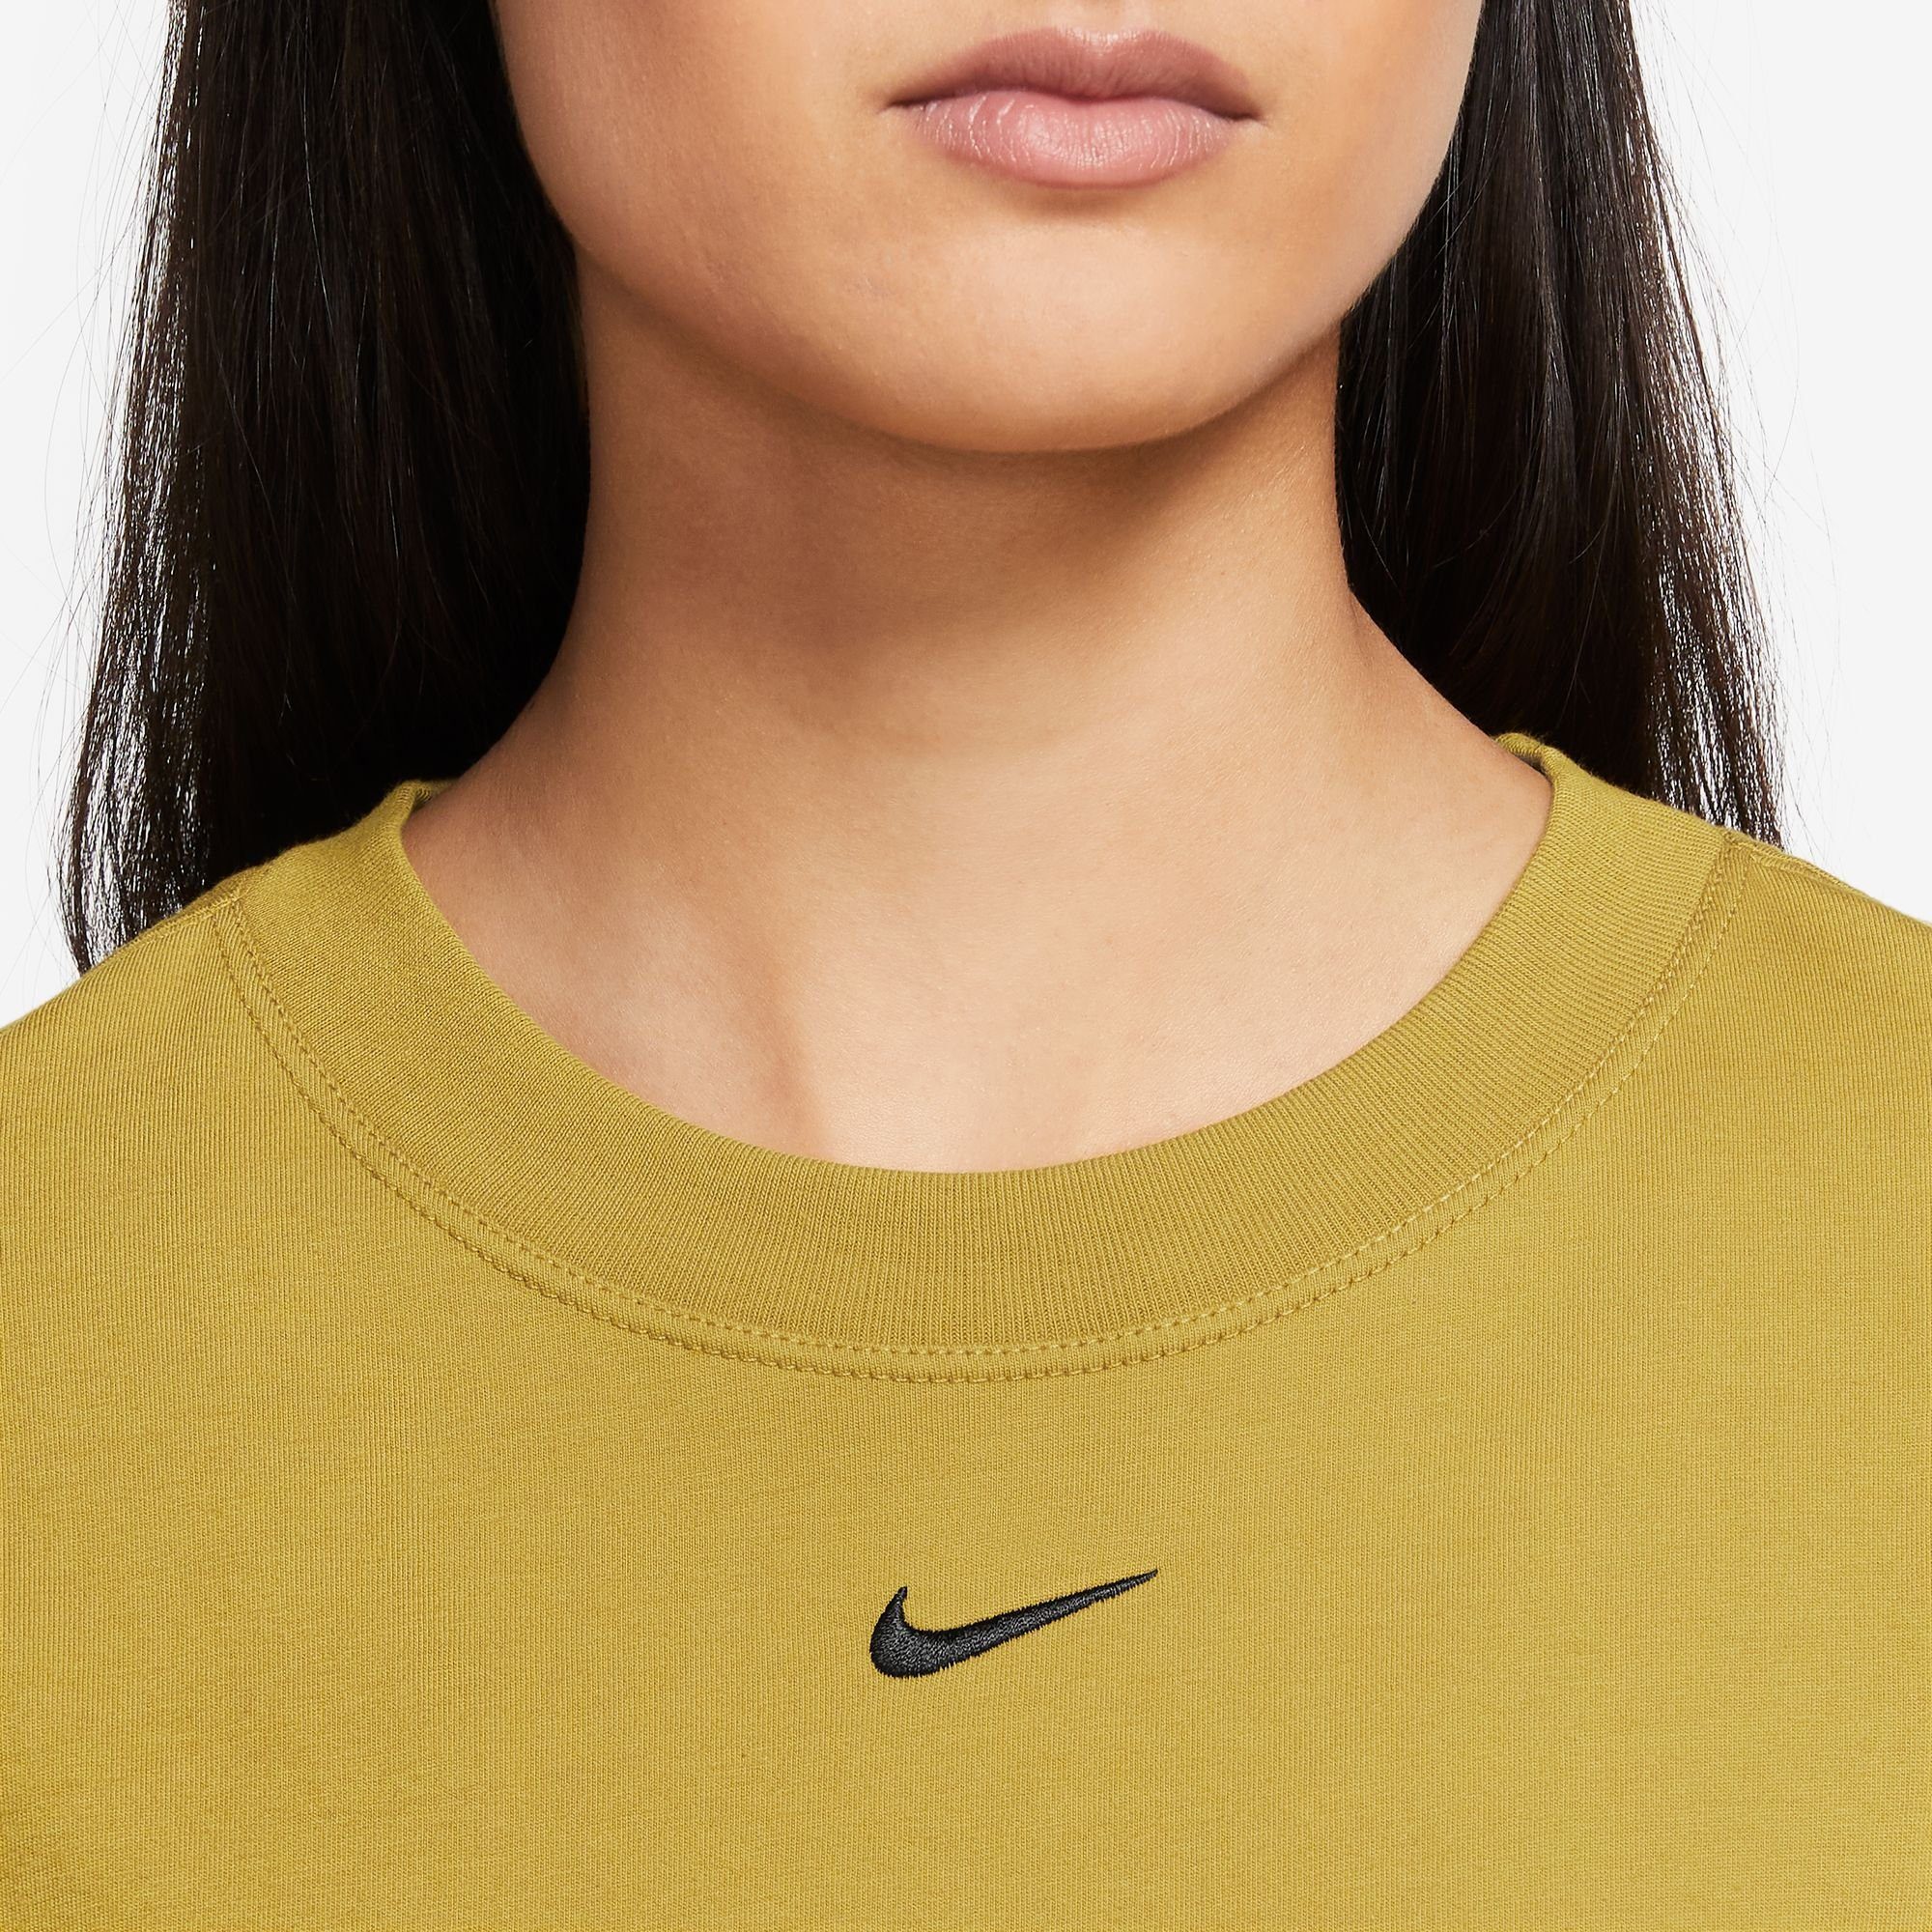 Nike Sportswear T-shirt WOMEN'S T-SHIRT